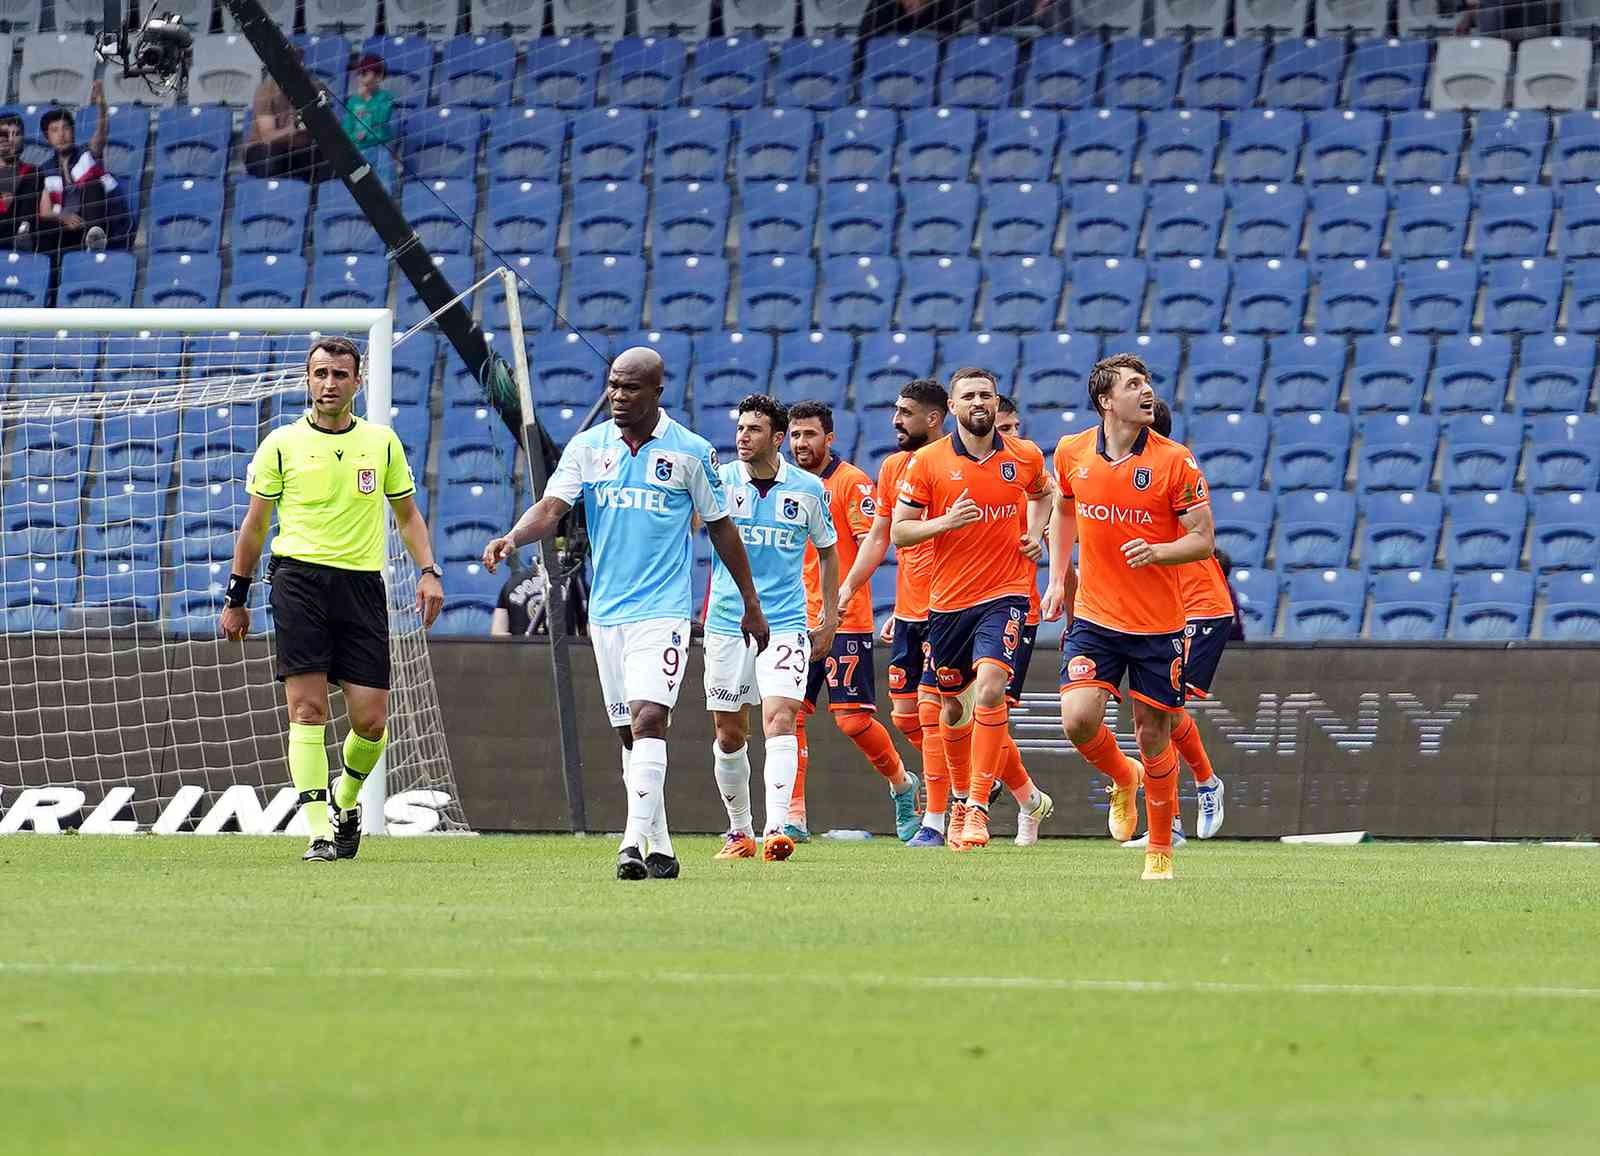 Spor Toto Süper Lig’in 38. ve son haftasında Medipol Başakşehir evinde Trabzonspor ile karşılaşıyor. Mücadelenin ilk yarısı turuncu ...